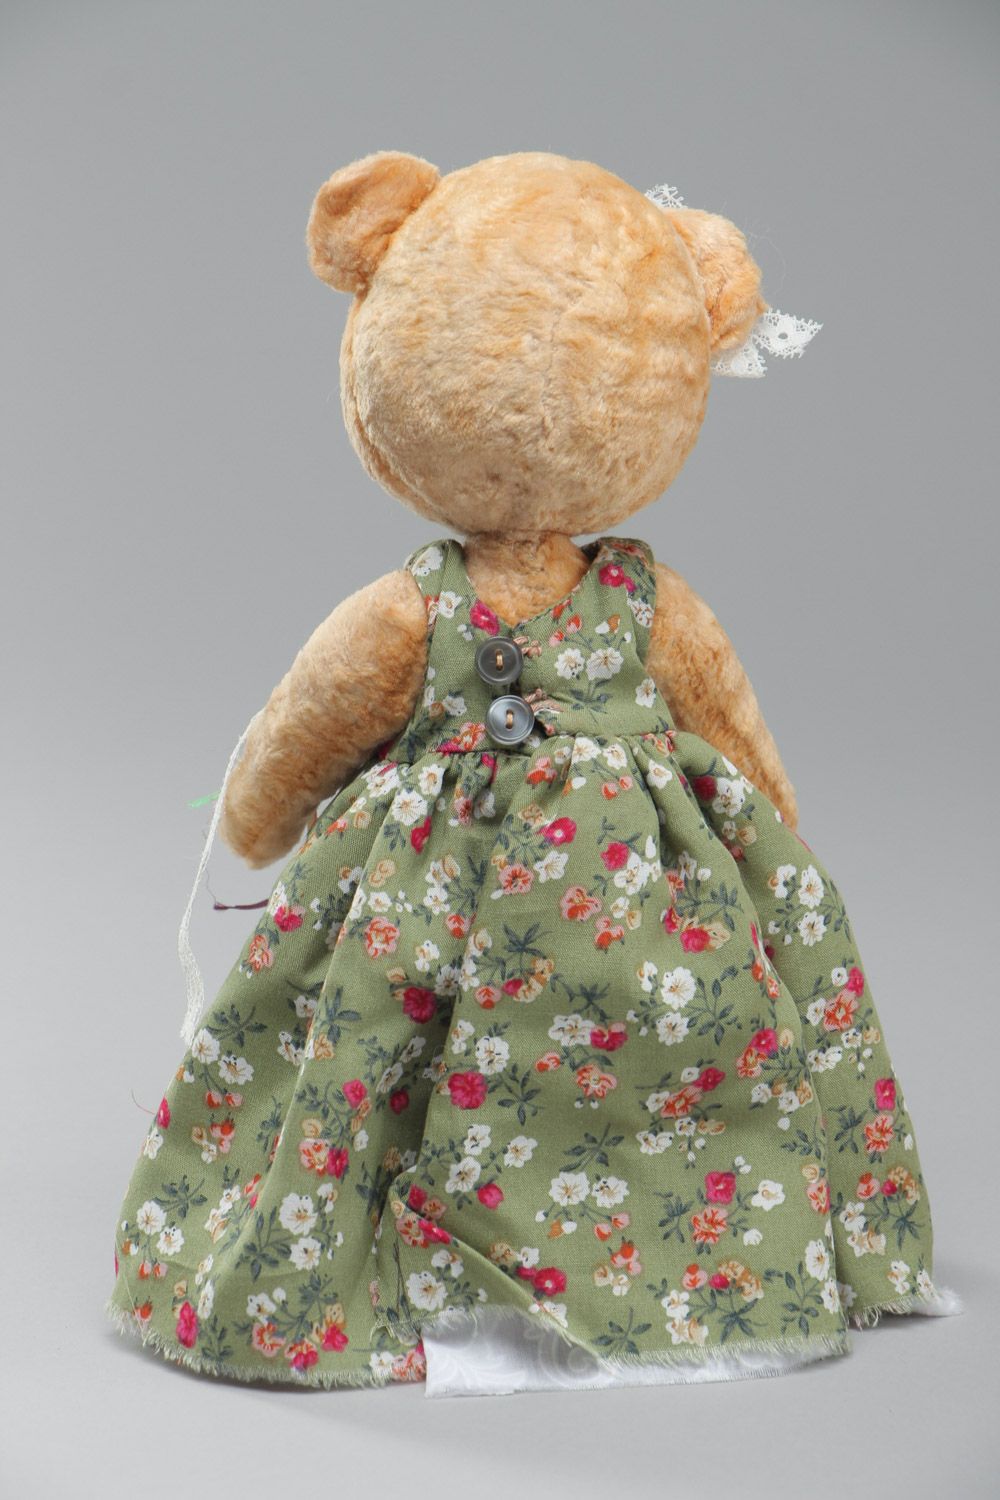 Плюшевый мишка в платье мягкая игрушка ручной работы для детей красивая фото 4